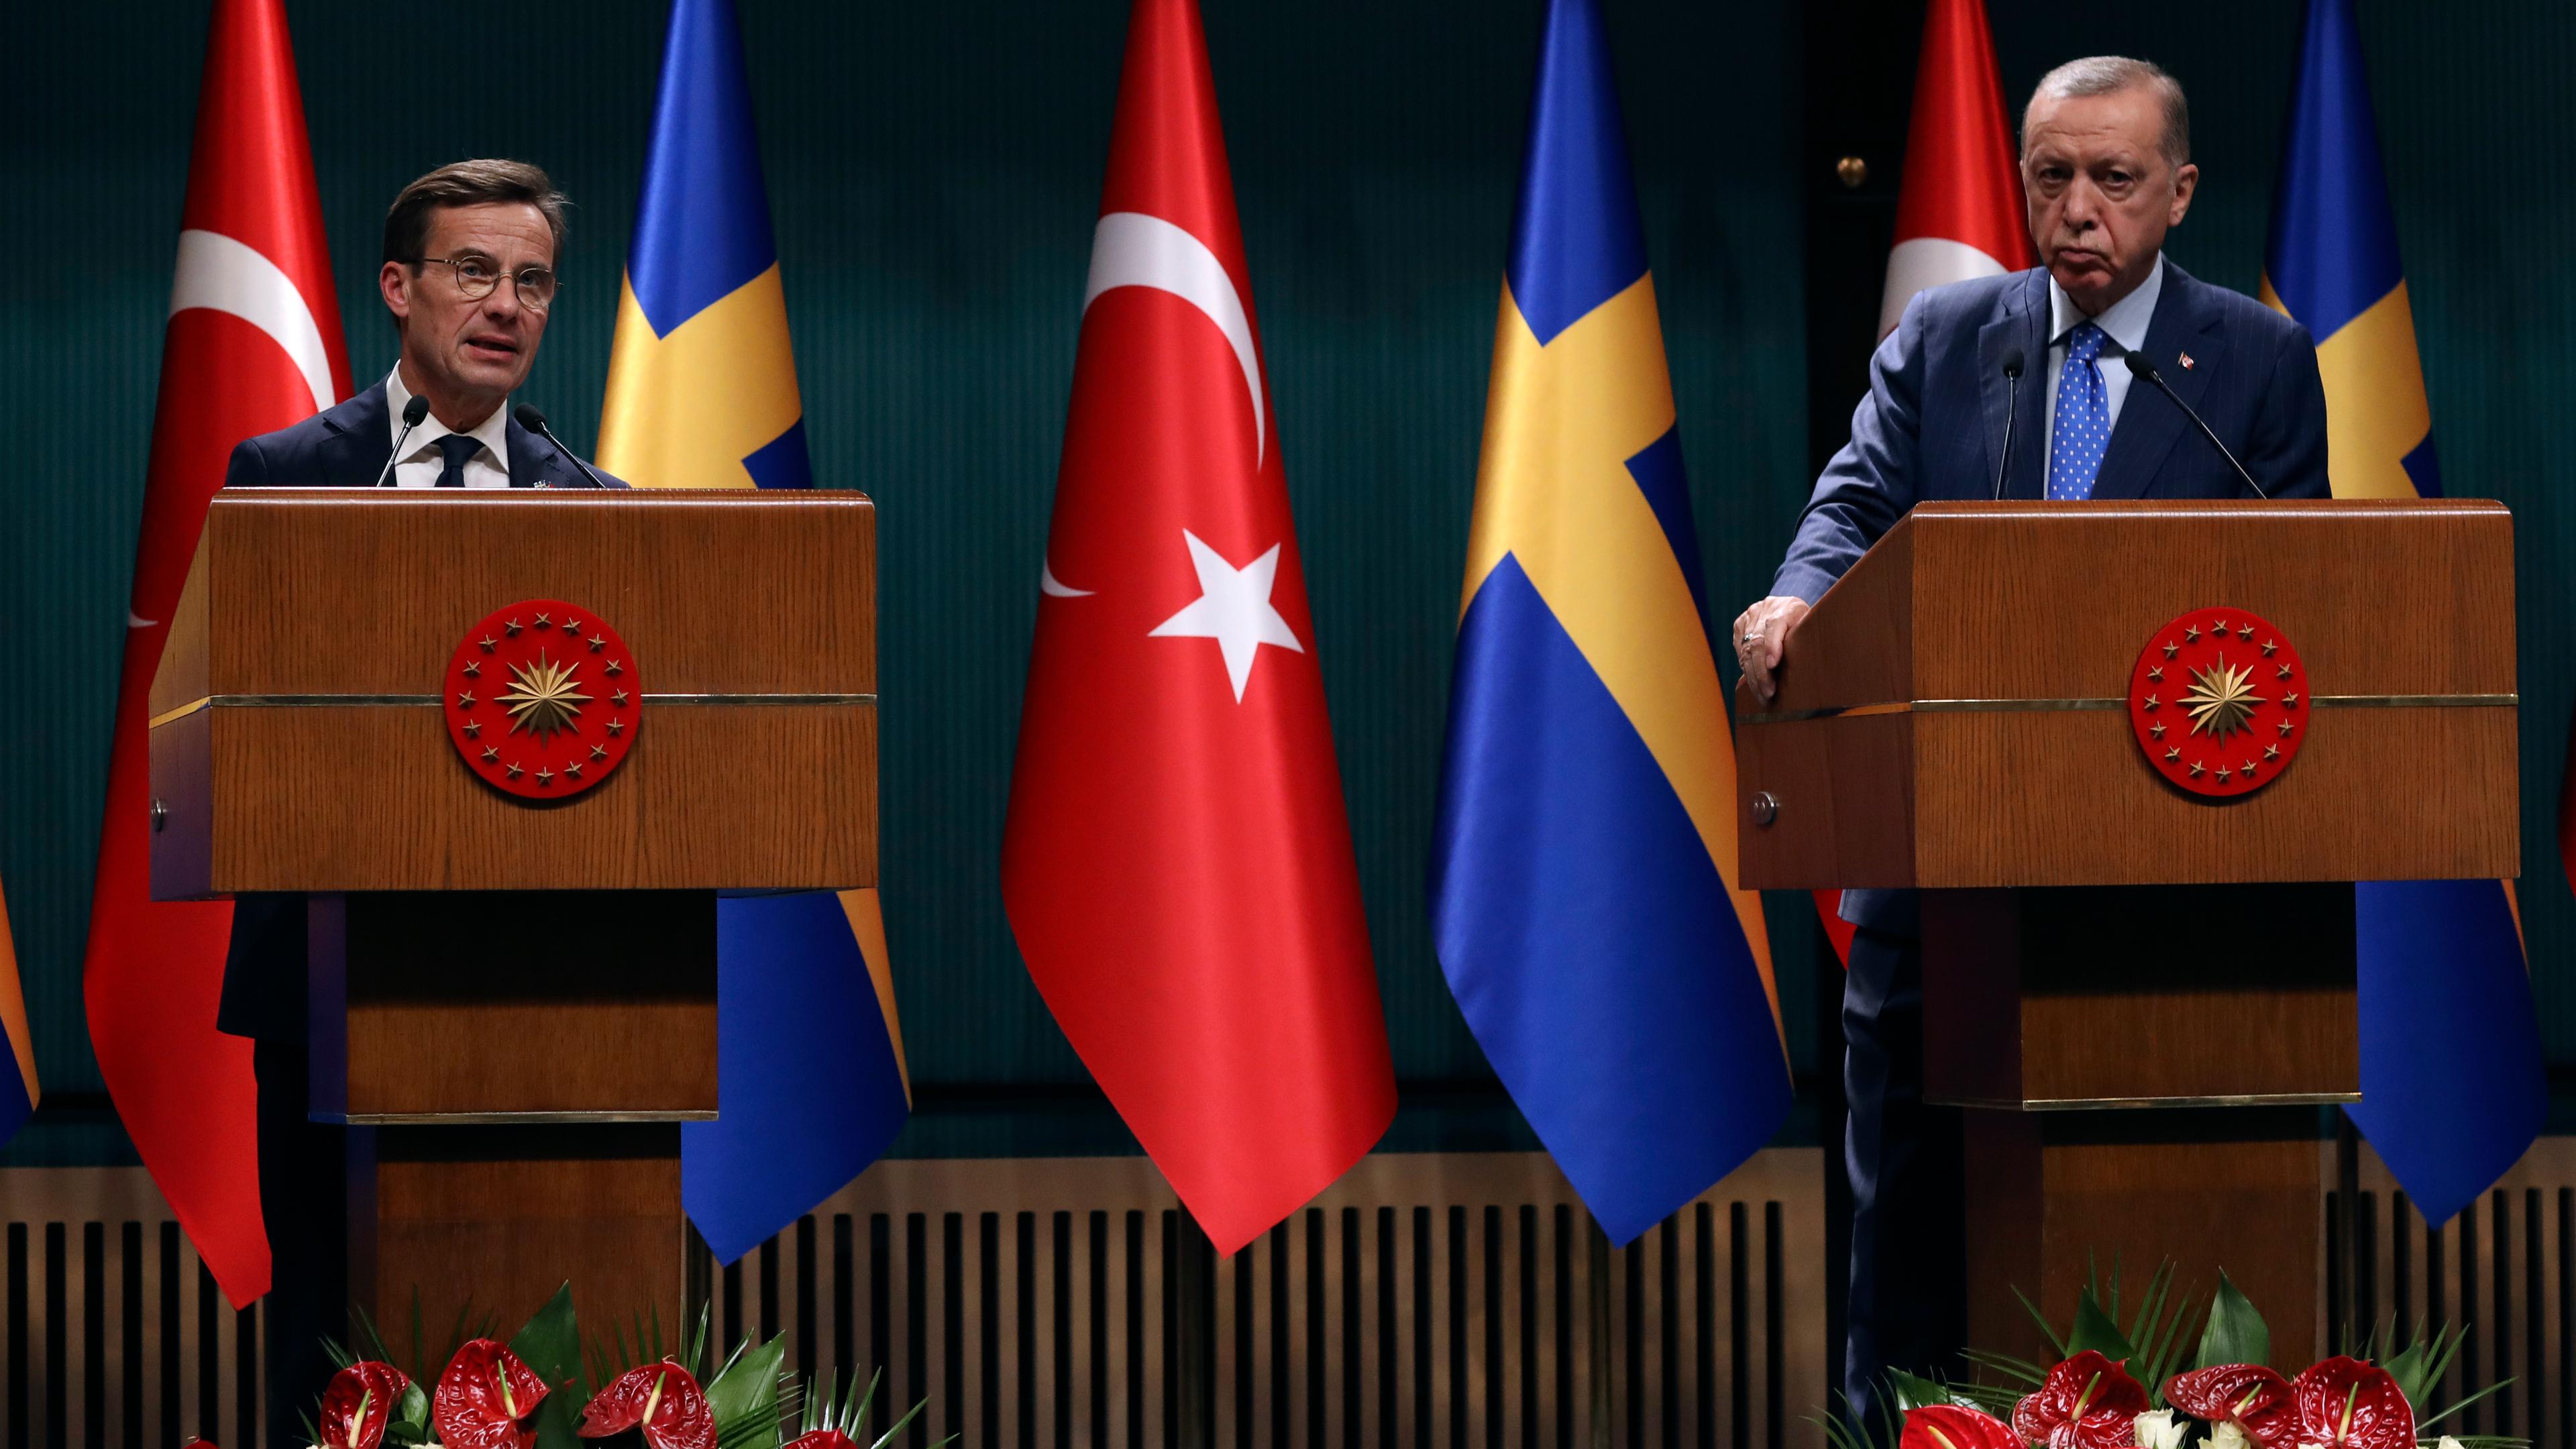 Recep Tayyip Erdogan, Präsident der Türkei, und Ulf Kristersson, Ministerpräsident von Schweden. (Archivbild)